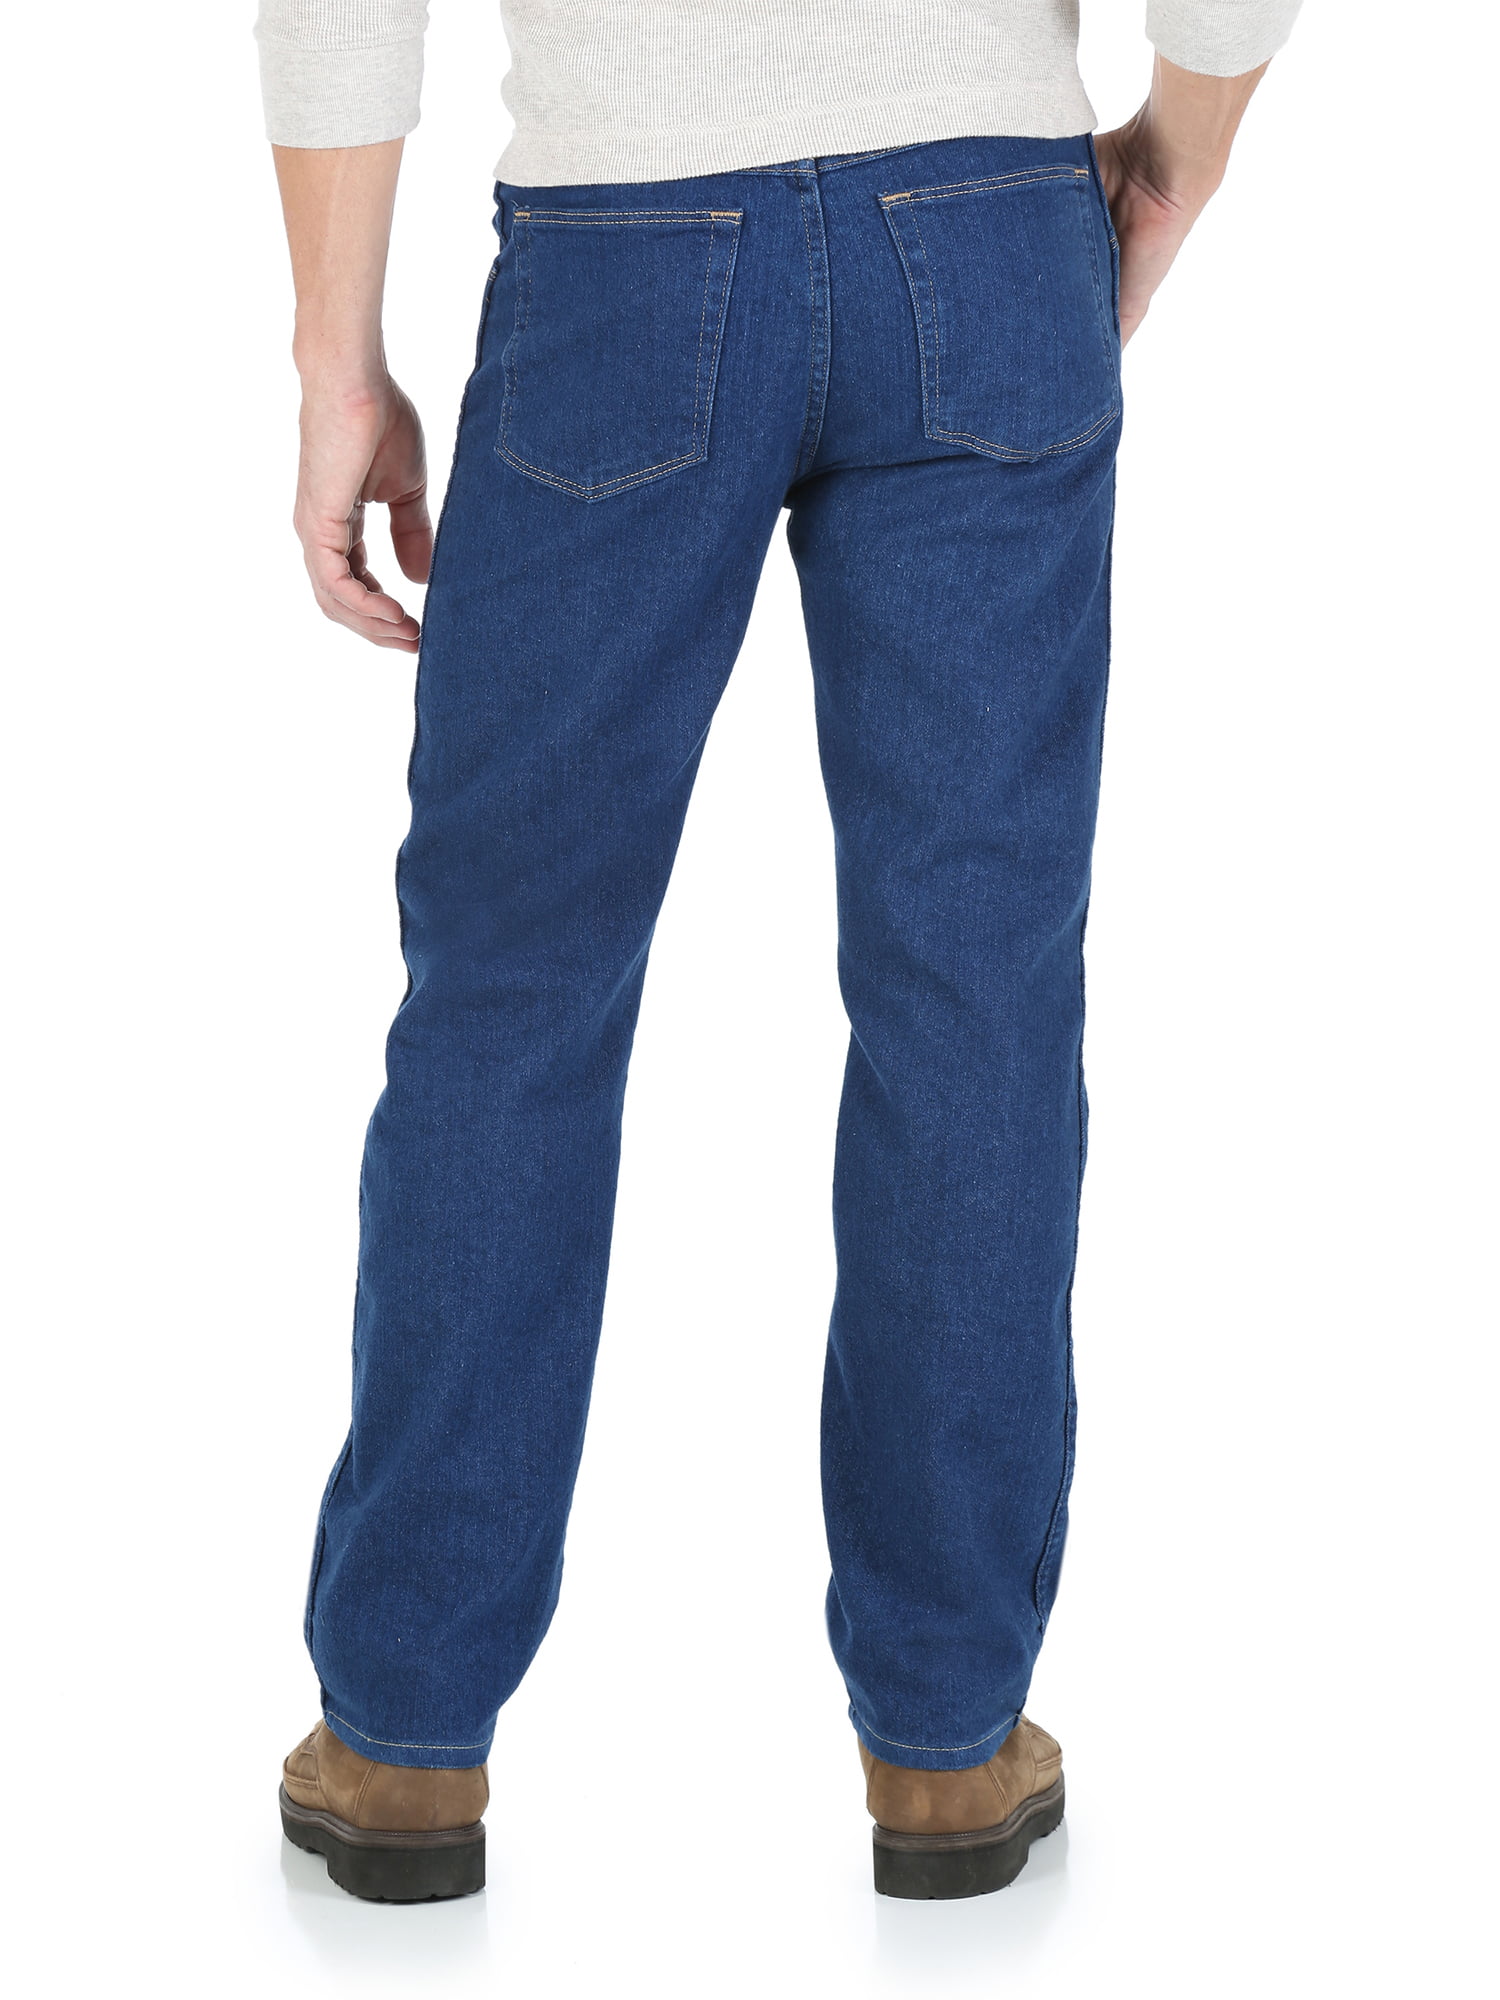 wrangler stretch waist jeans walmart